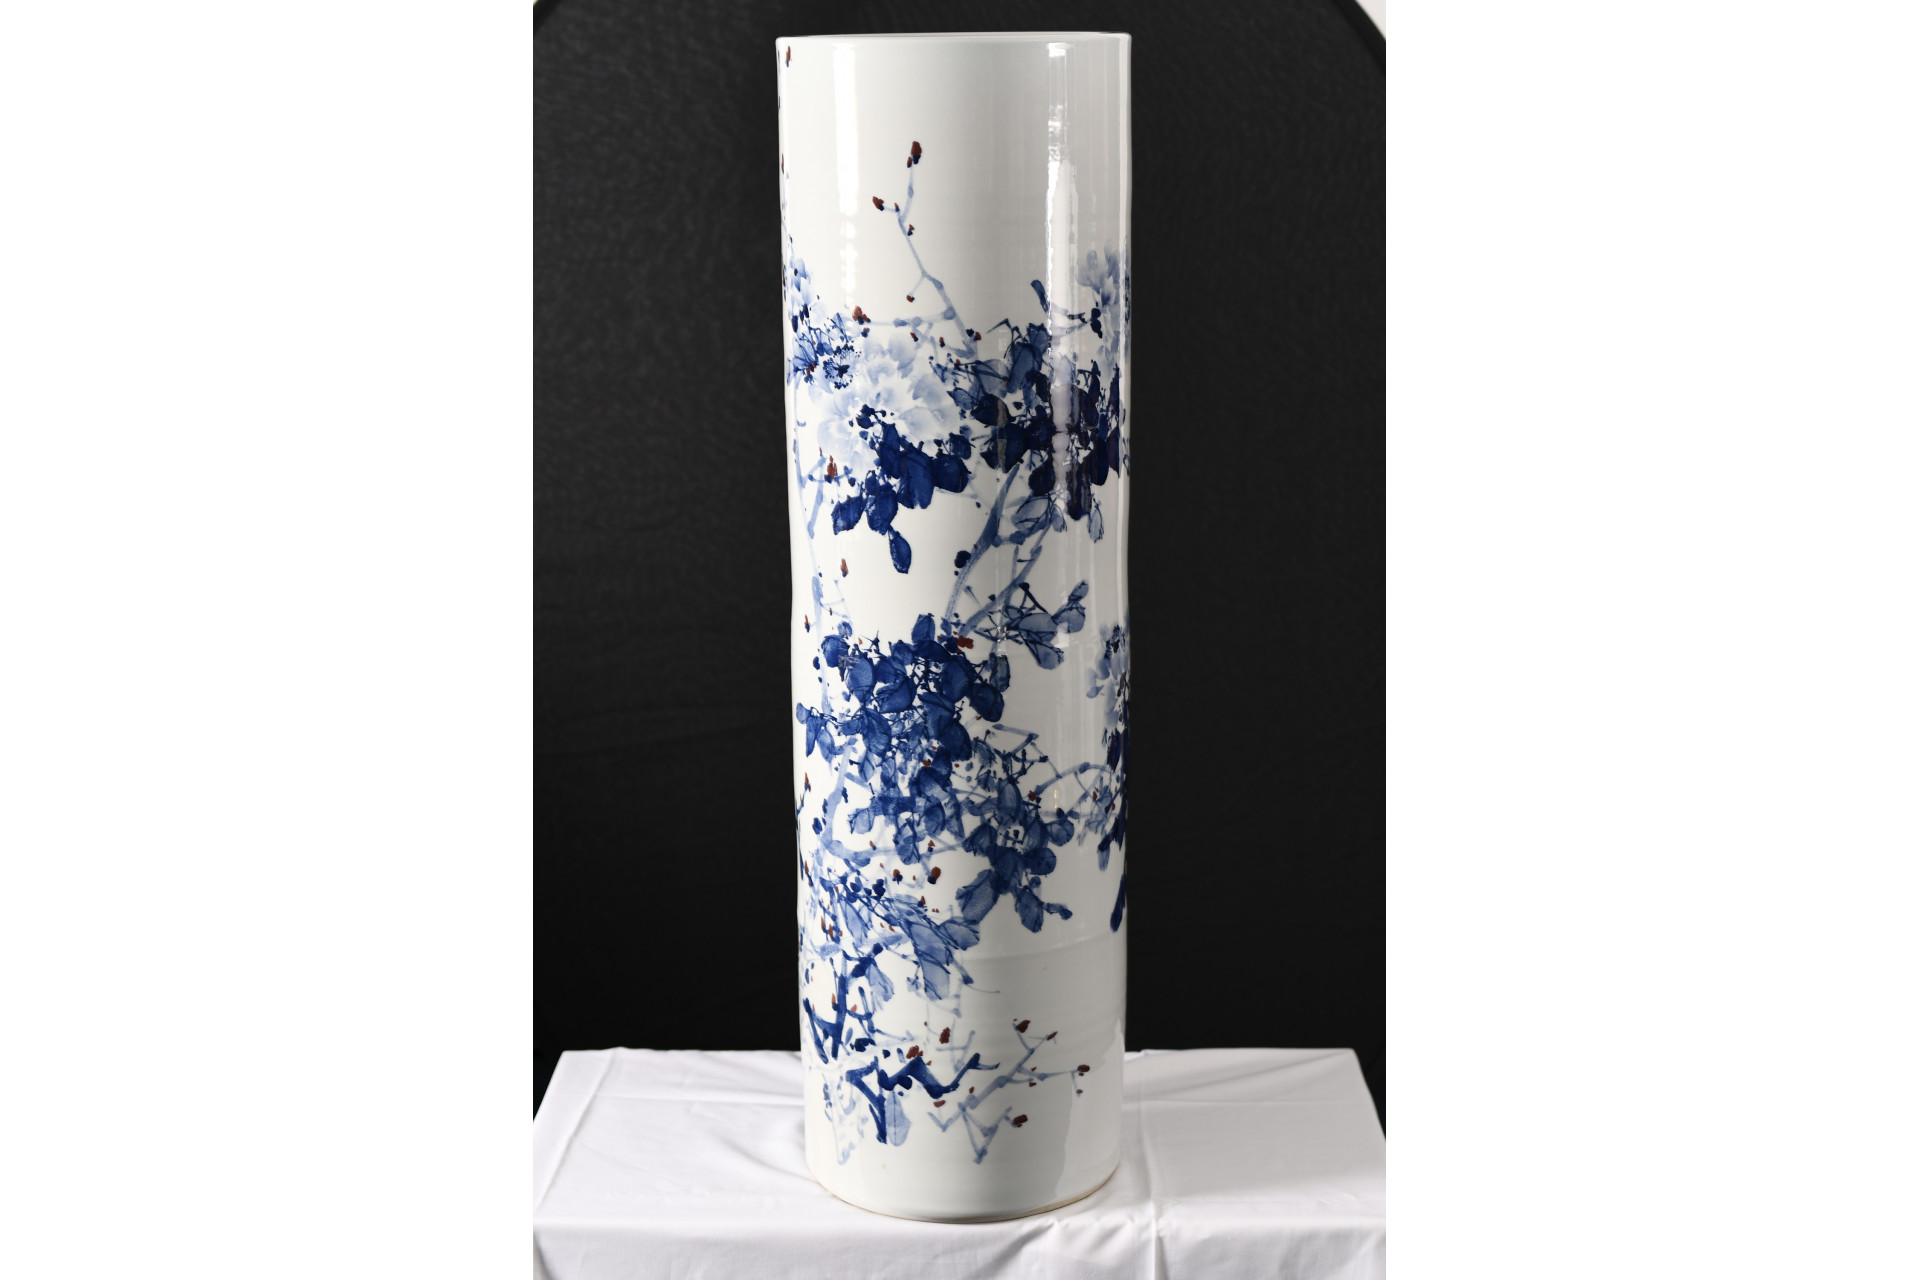 4ft Porcelain Hand Made Vase